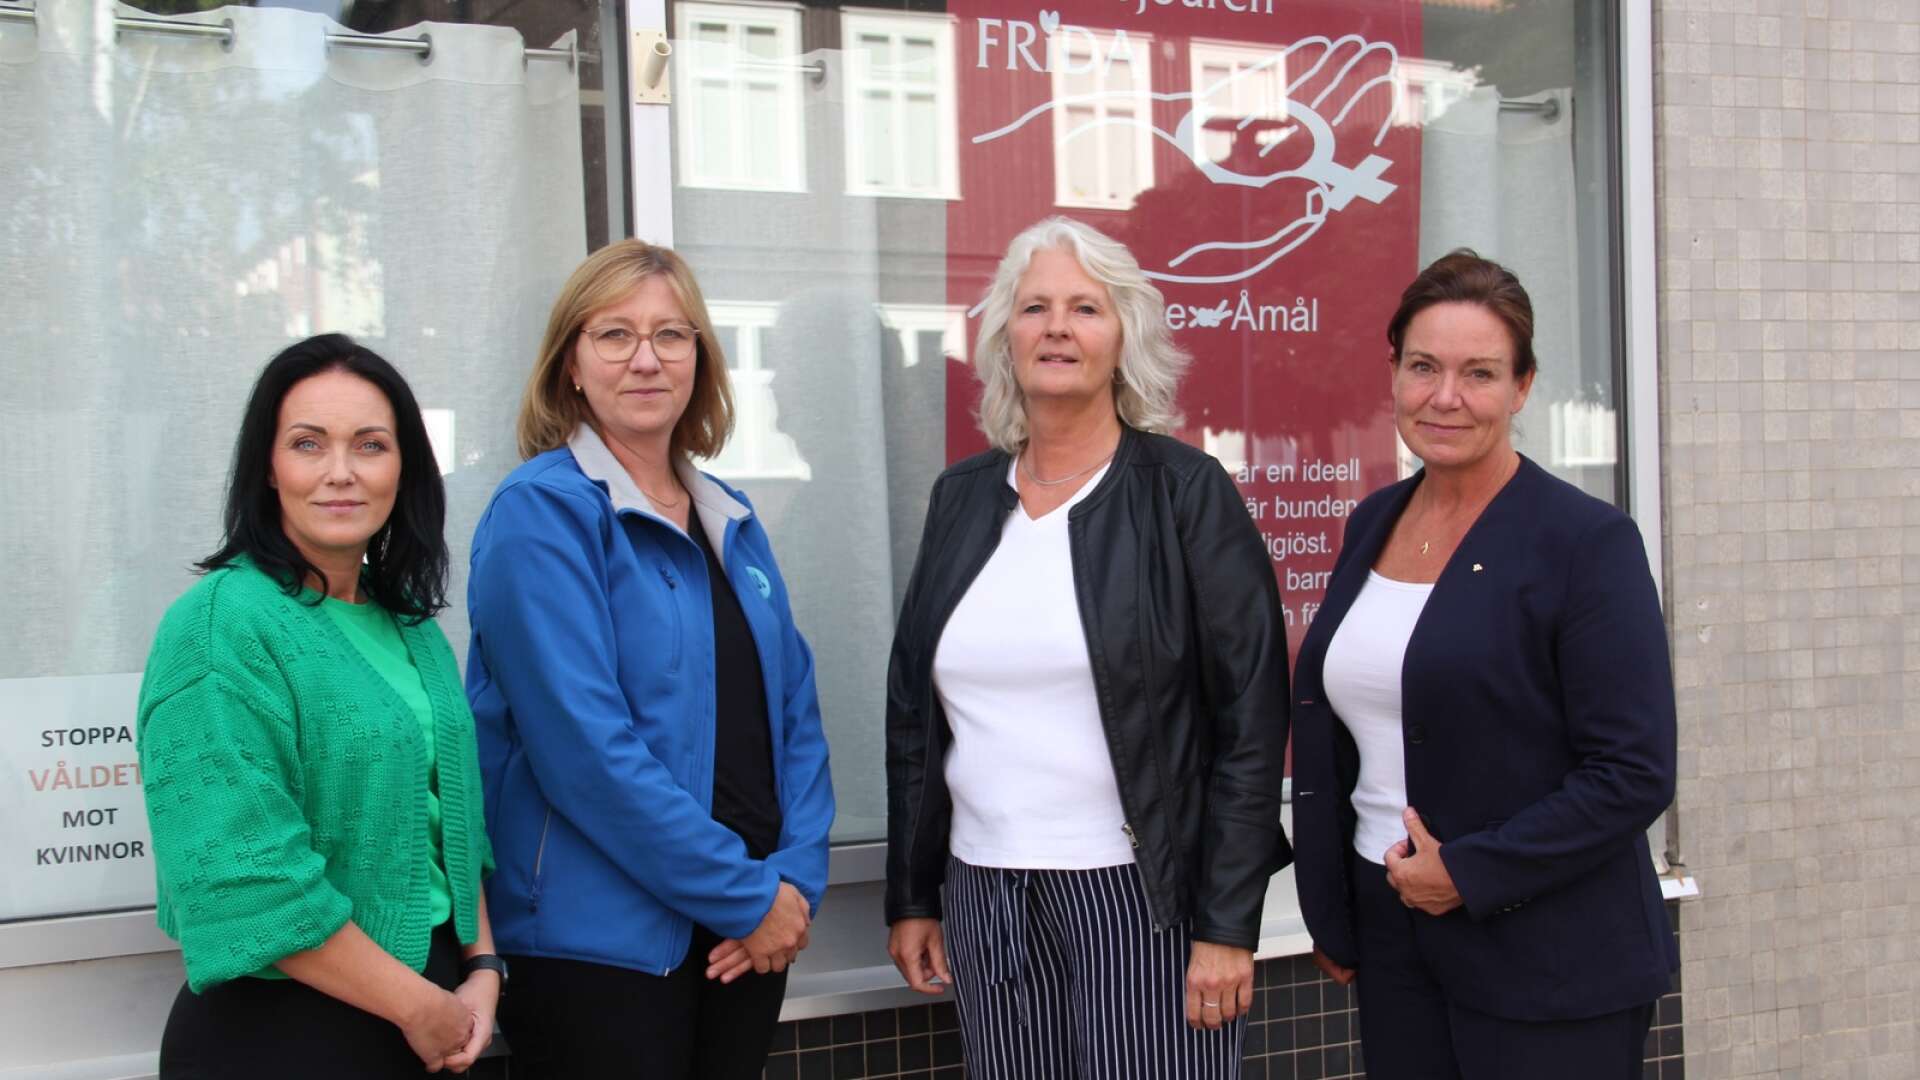 I måndags fick Kvinnojouren Frida besök vid lokalen på Perssons gränd i Säffle av tre politiker från Moderaterna. Från vänster: Camilla Ackerblad (M), Stina Höök (M), Catarina Bäckström, samordnare vid Kvinnojouren Frida, och Ann-Sofie Alm (M).